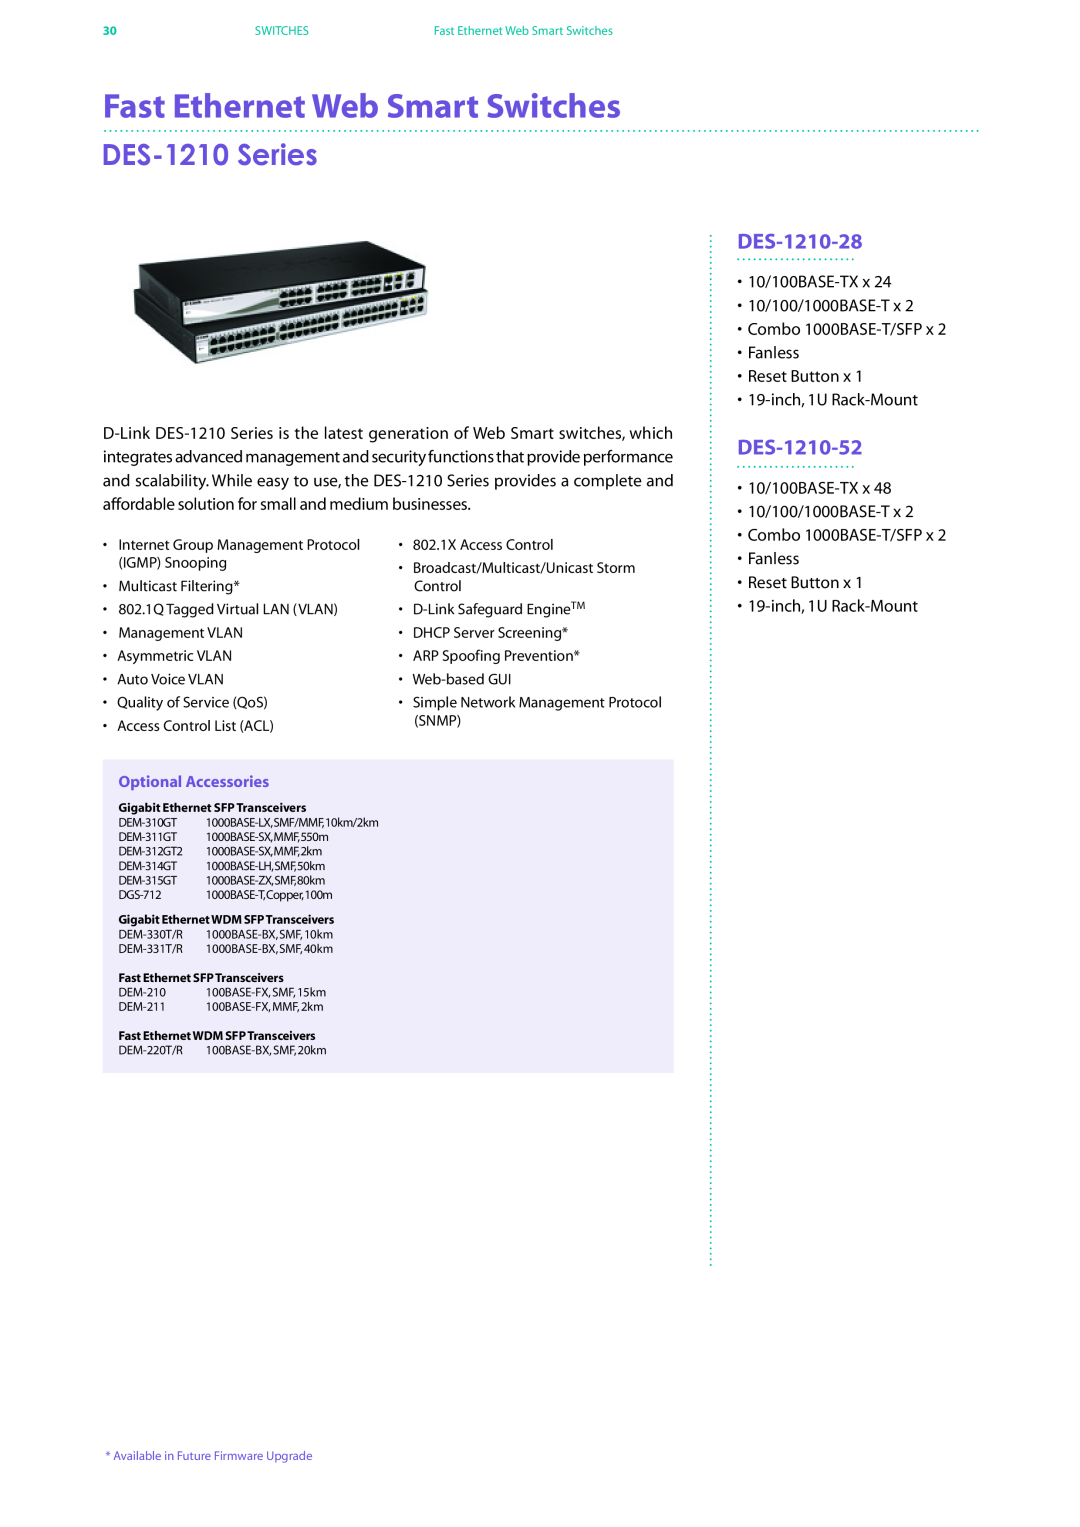 D-Link DES-7200 manual Fast Ethernet Web Smart Switches, DES-1210 Series, DES-1210-28, DES-1210-52, Optional Accessories 